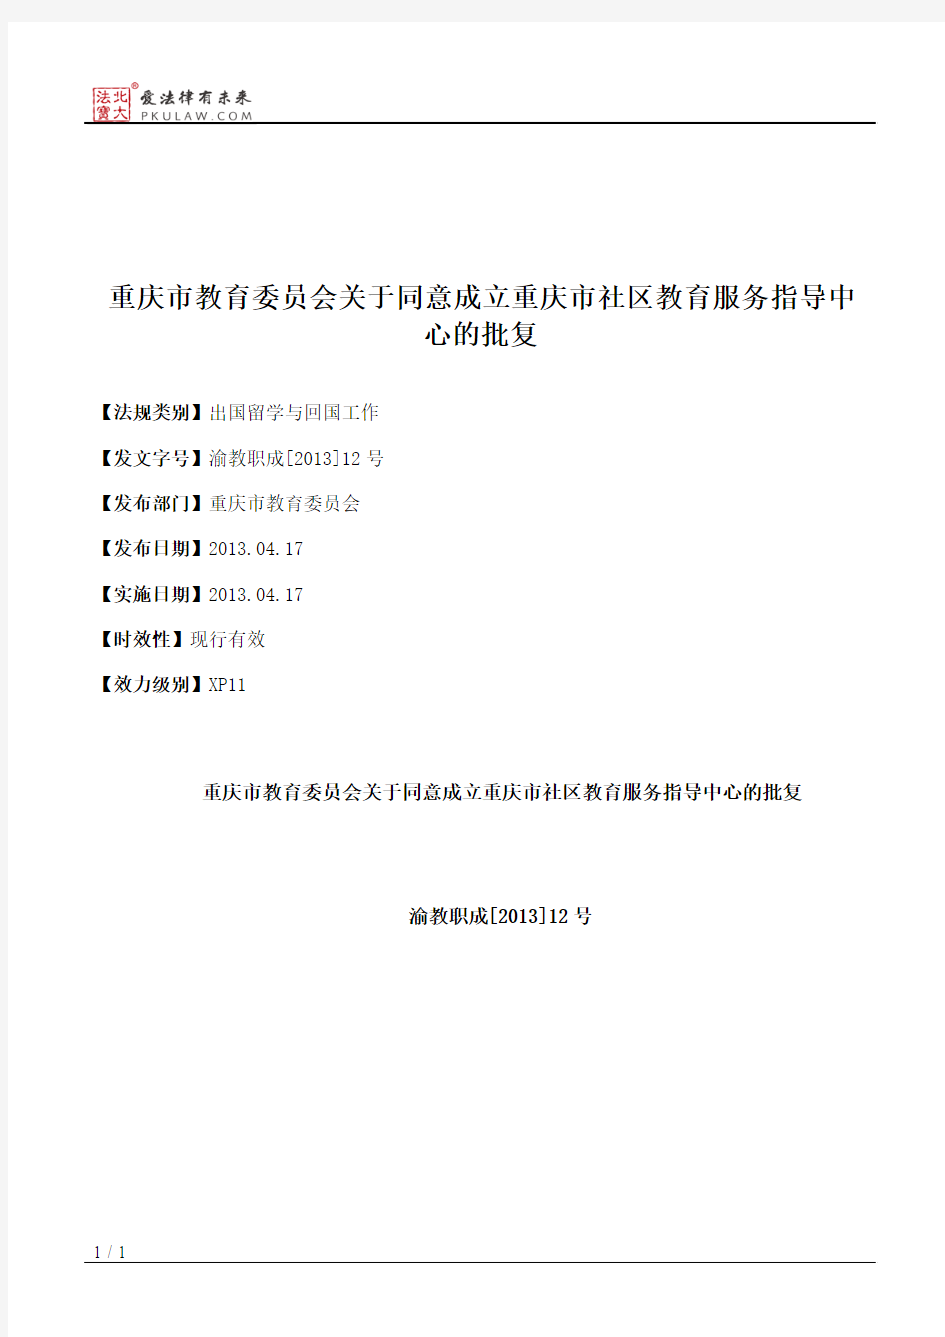 重庆市教育委员会关于同意成立重庆市社区教育服务指导中心的批复